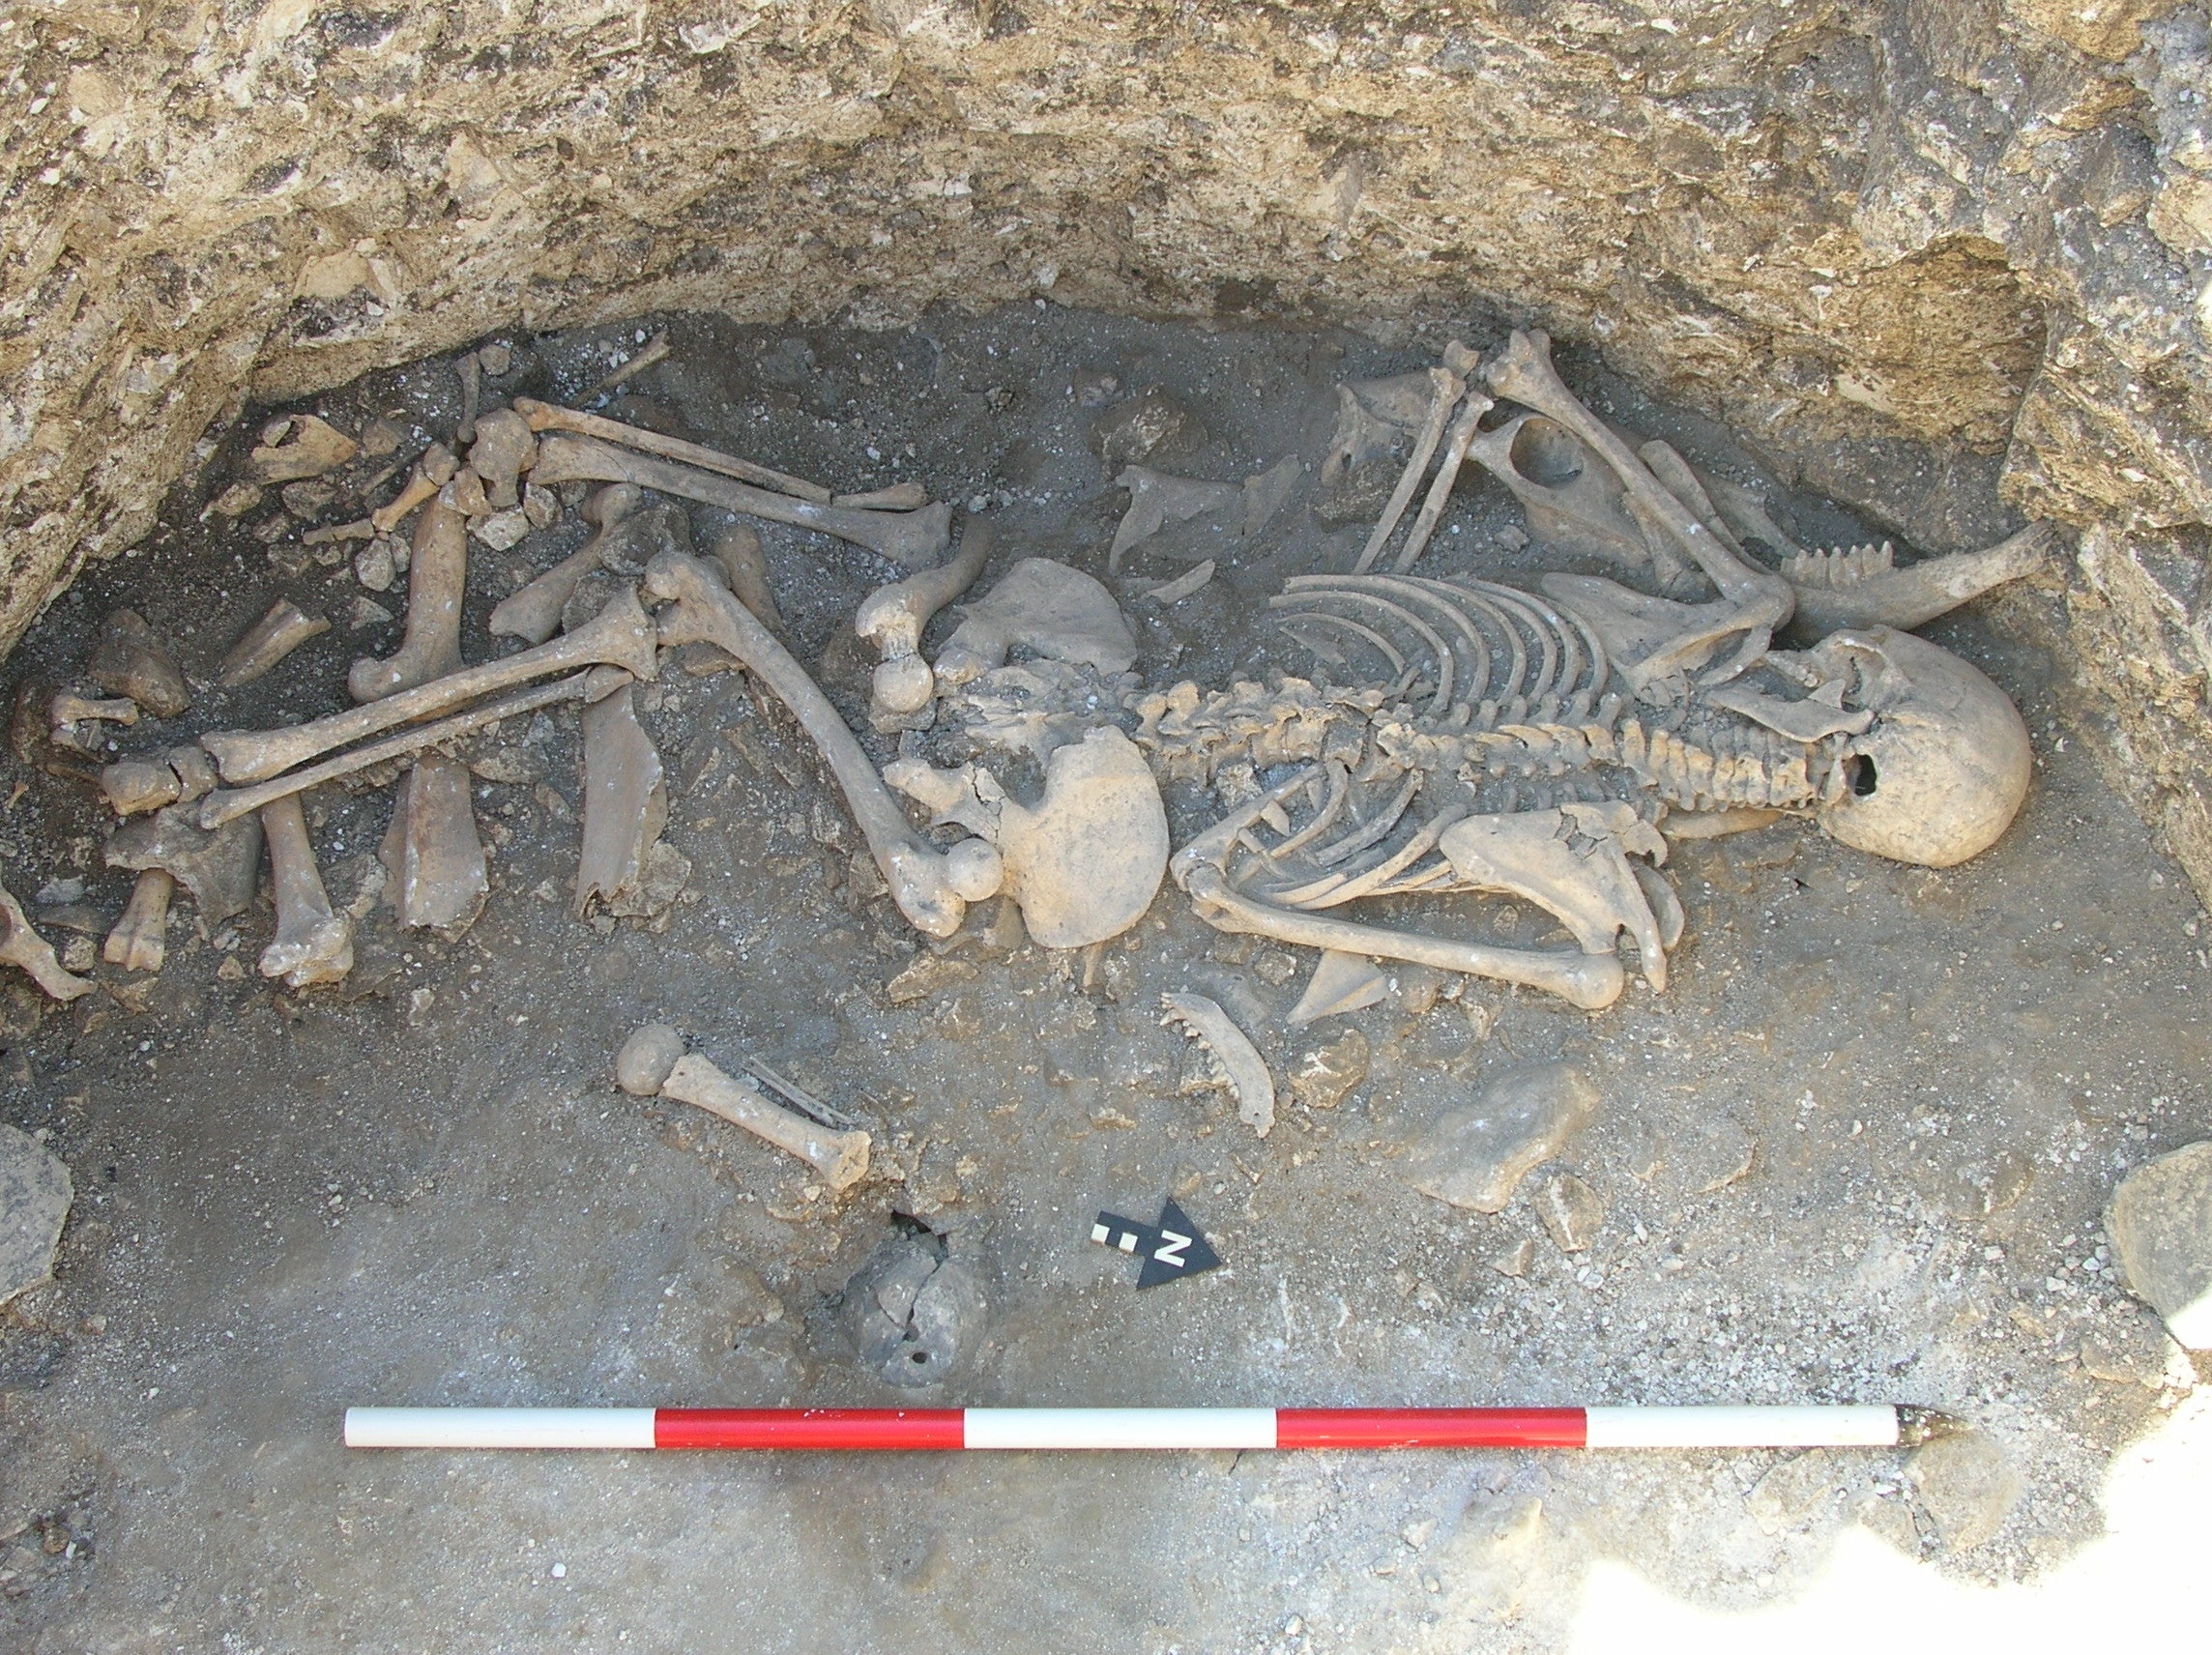 Se encontraron restos de una mujer que fue asesinada de una puñalada en el cuello, además de sufrir daños en una costilla, posiblemente infligidos con violencia, durante las excavaciones de un asentamiento prehistórico que data de hace 2.000 años en Winterborne Kingston, en el centro de Dorset